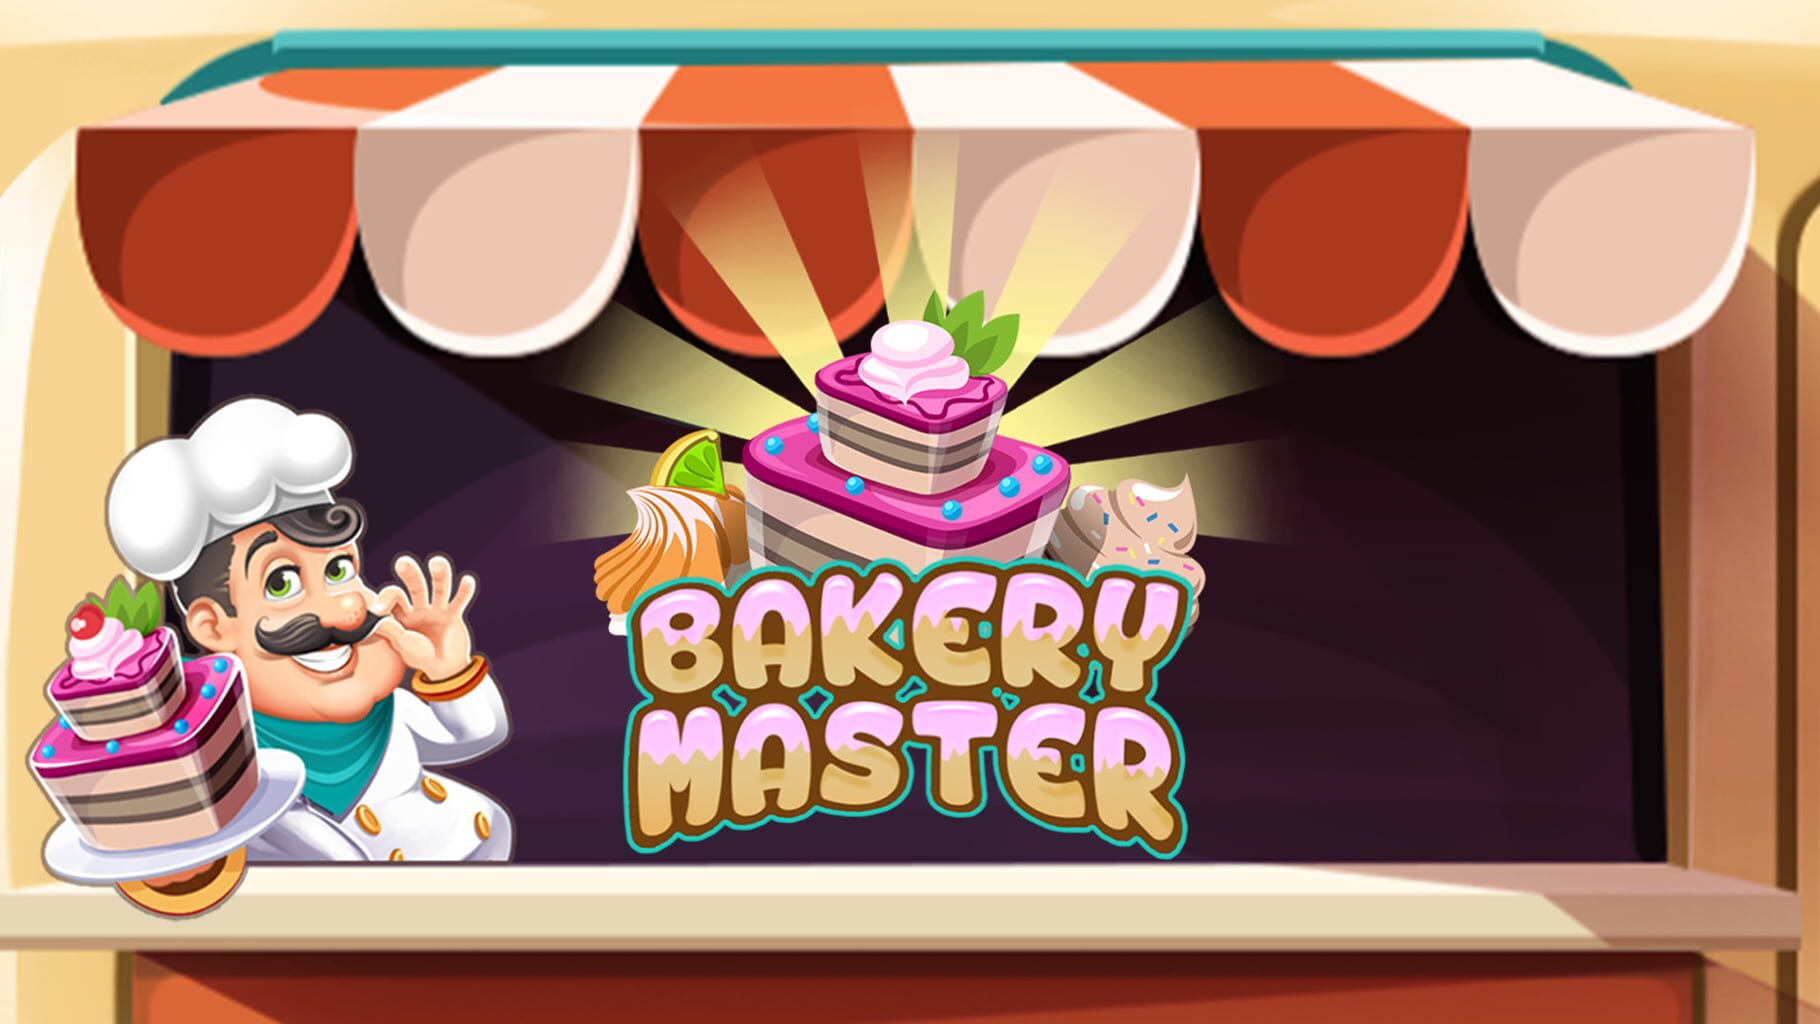 Bakery Master artwork